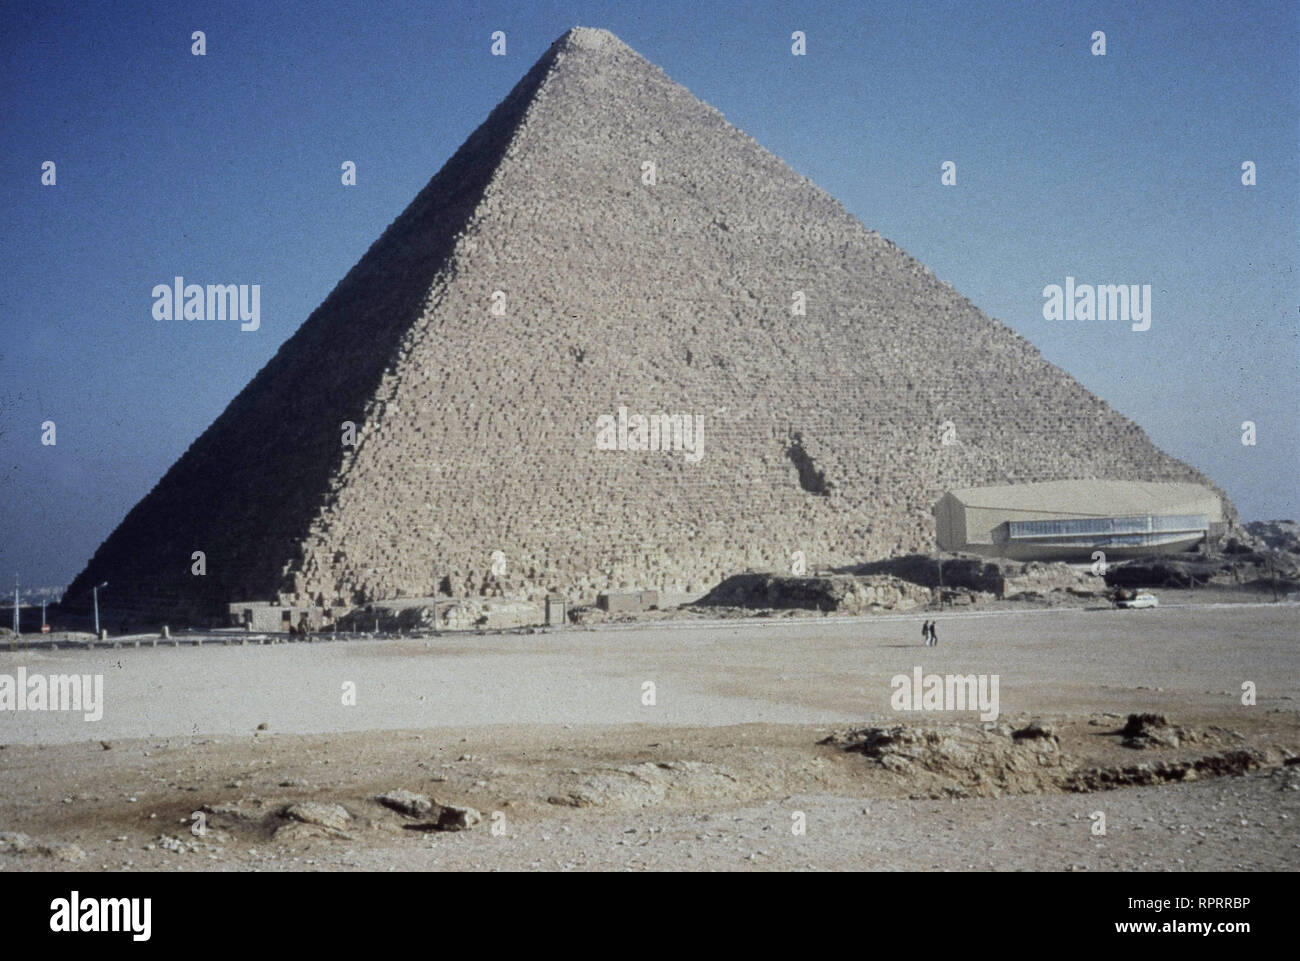 DAS RÄTSEL DER PYRAMIDEN / 2001 / Die Pyramiden von Gizeh, Egypte, Abendlicht / Überschrift : DAS RÄTSEL DER PYRAMIDEN / 2001 Banque D'Images